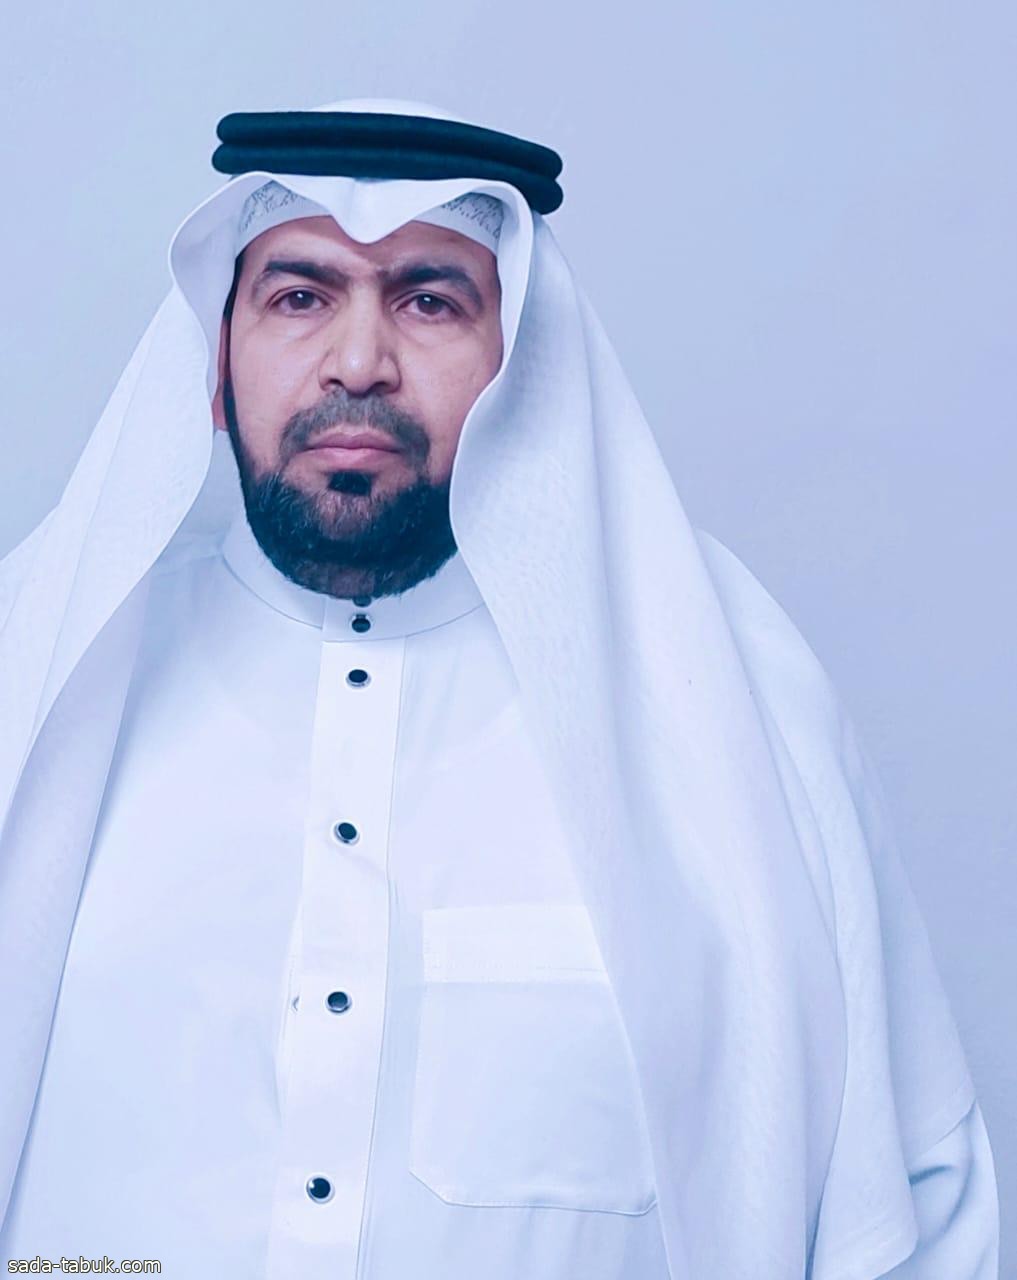 منح الشاعر "حمدان الفضلي" جائزة الشخصية العربية للمسؤولية الاجتماعية